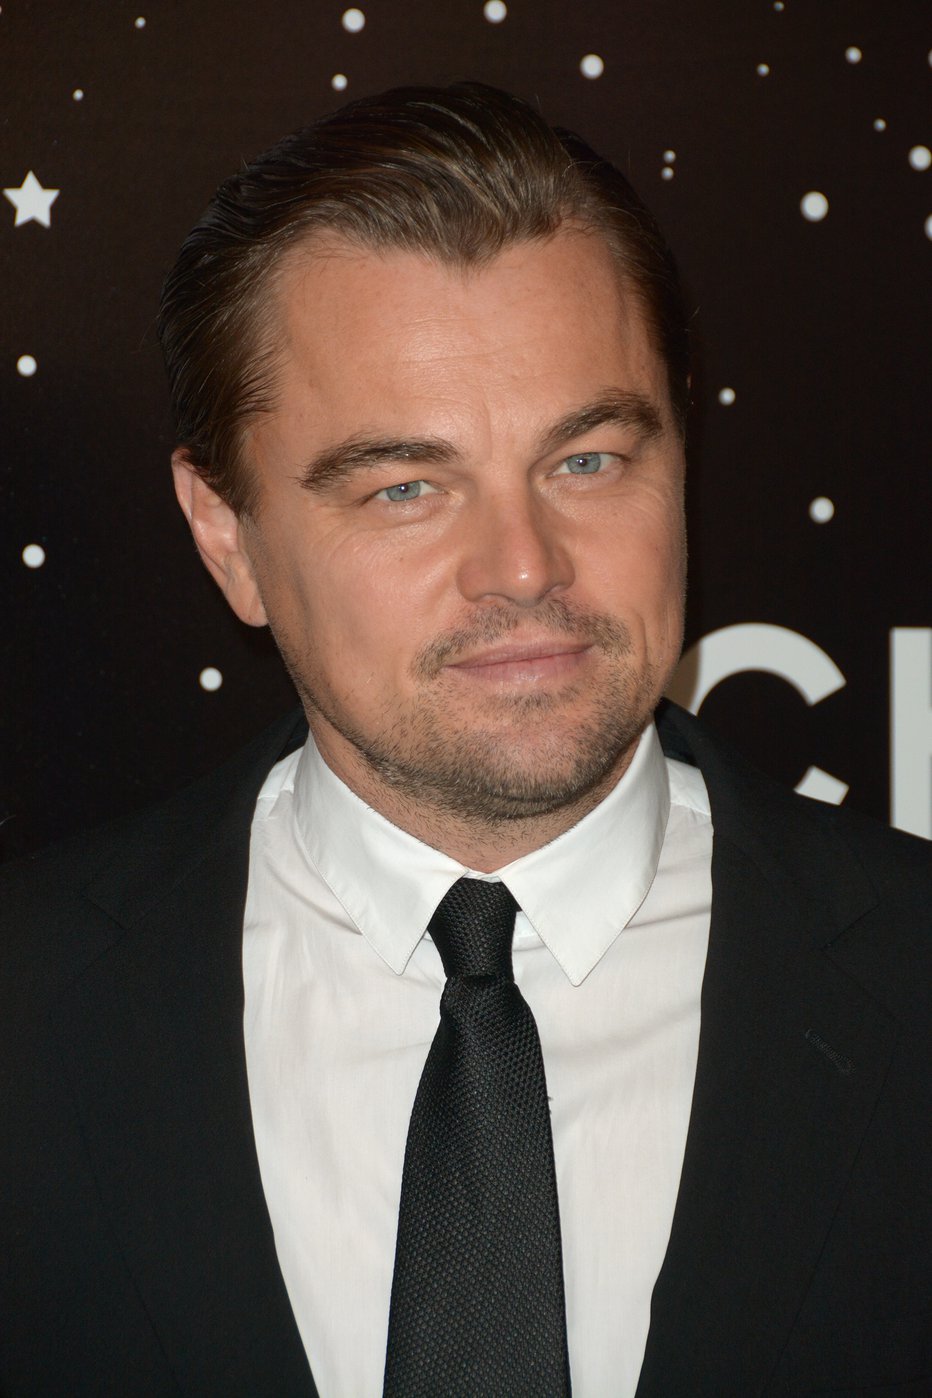 Fotografija: Leonardo DiCaprio je zelo delaven in uspešen. FOTO: Guliver/Cover Images